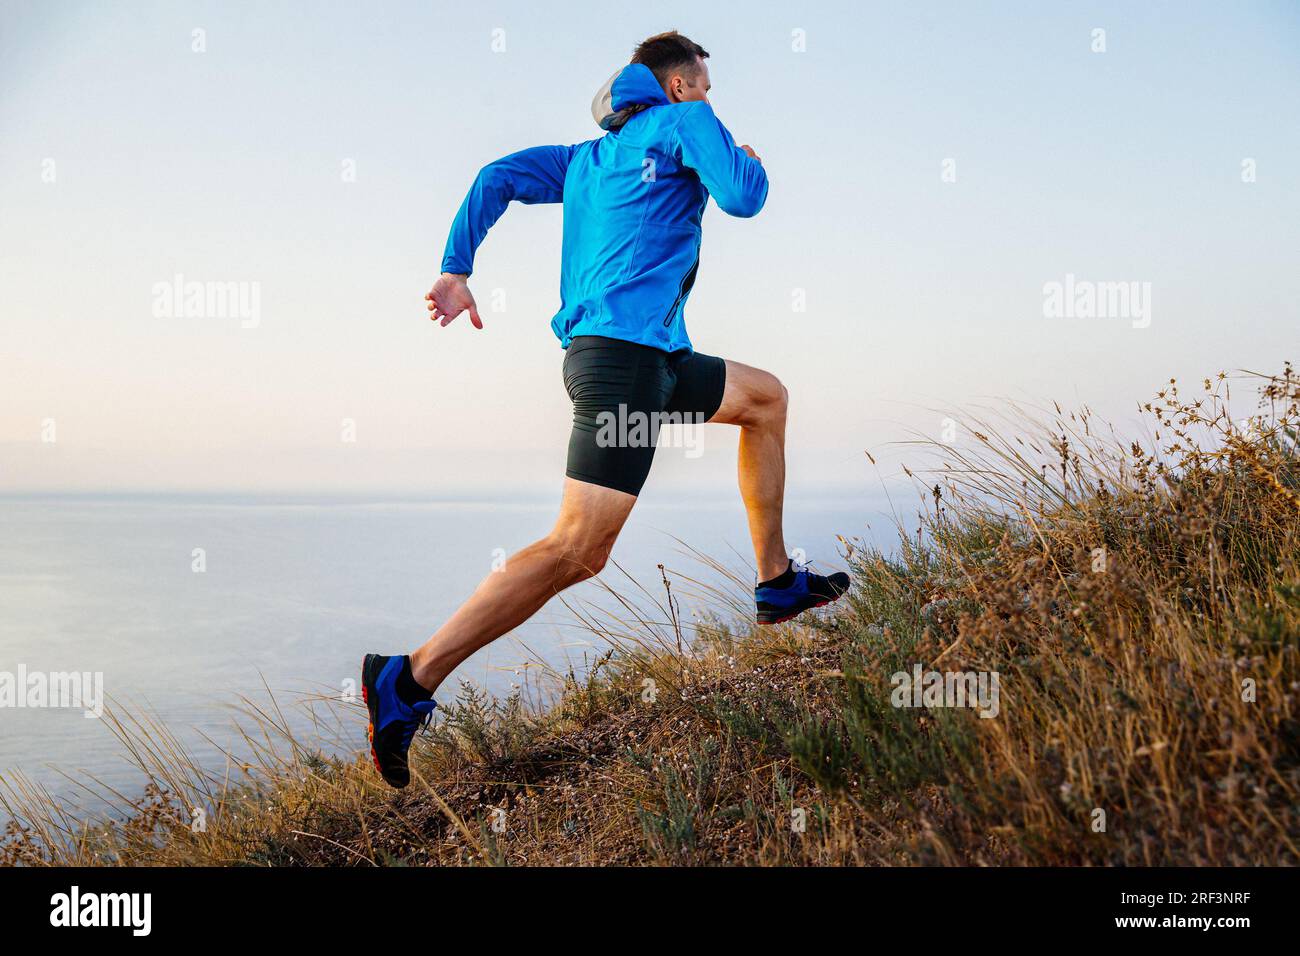 corridore maschile che corre in salita con giacca blu e collant neri, sfondo di cielo e mare, erba secca del sentiero Foto Stock